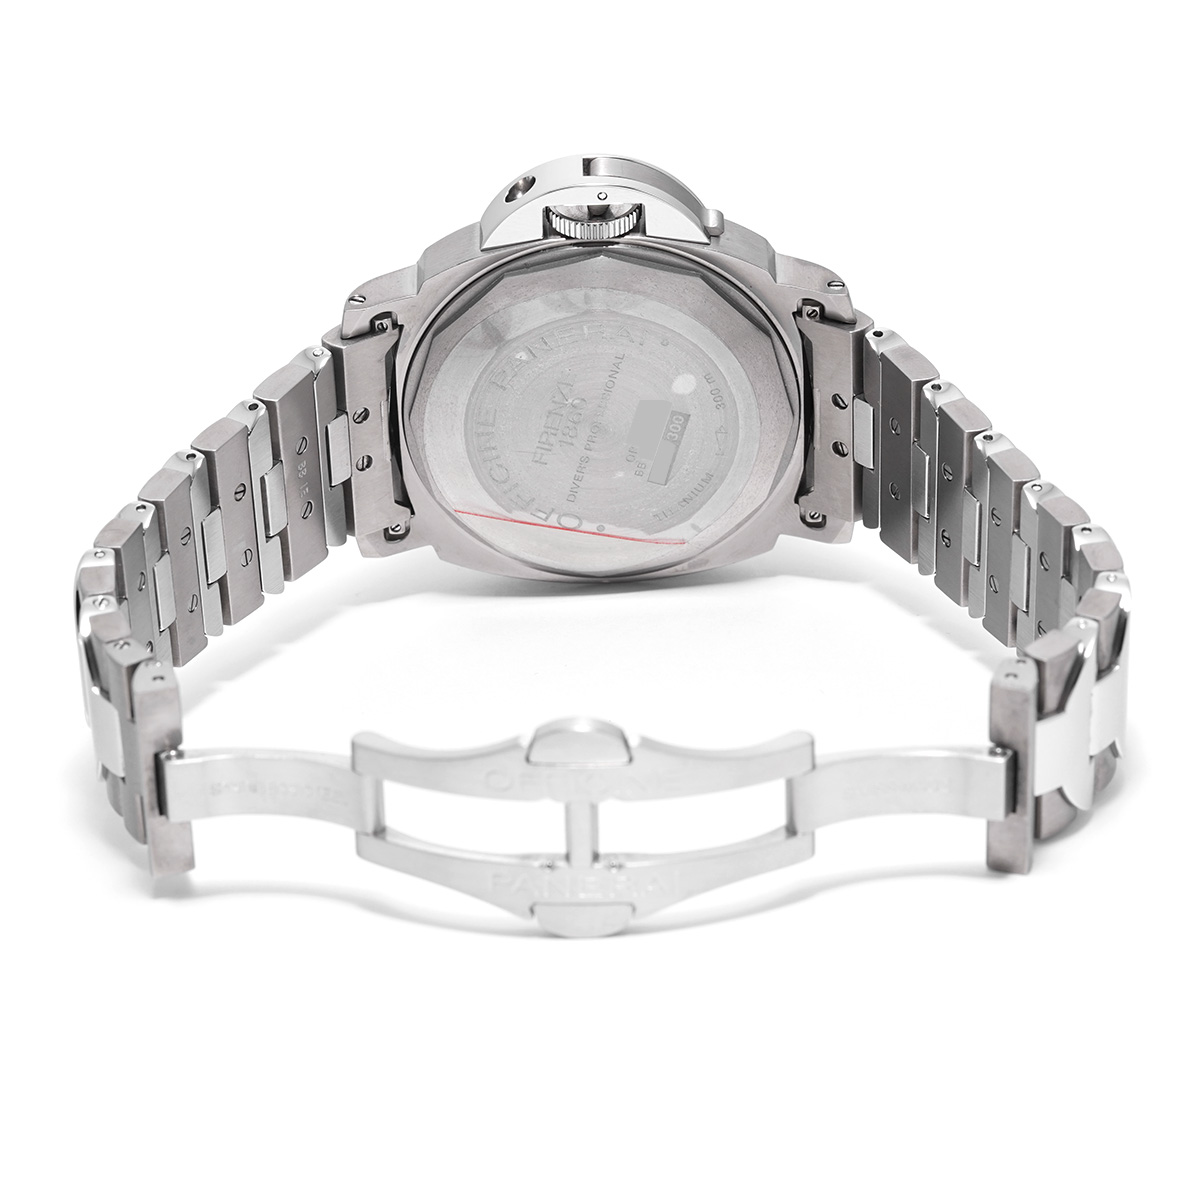 パネライ / PANERAI ルミノール サブマーシブル PAM00170 グレー メンズ 時計 【中古】【wristwatch】